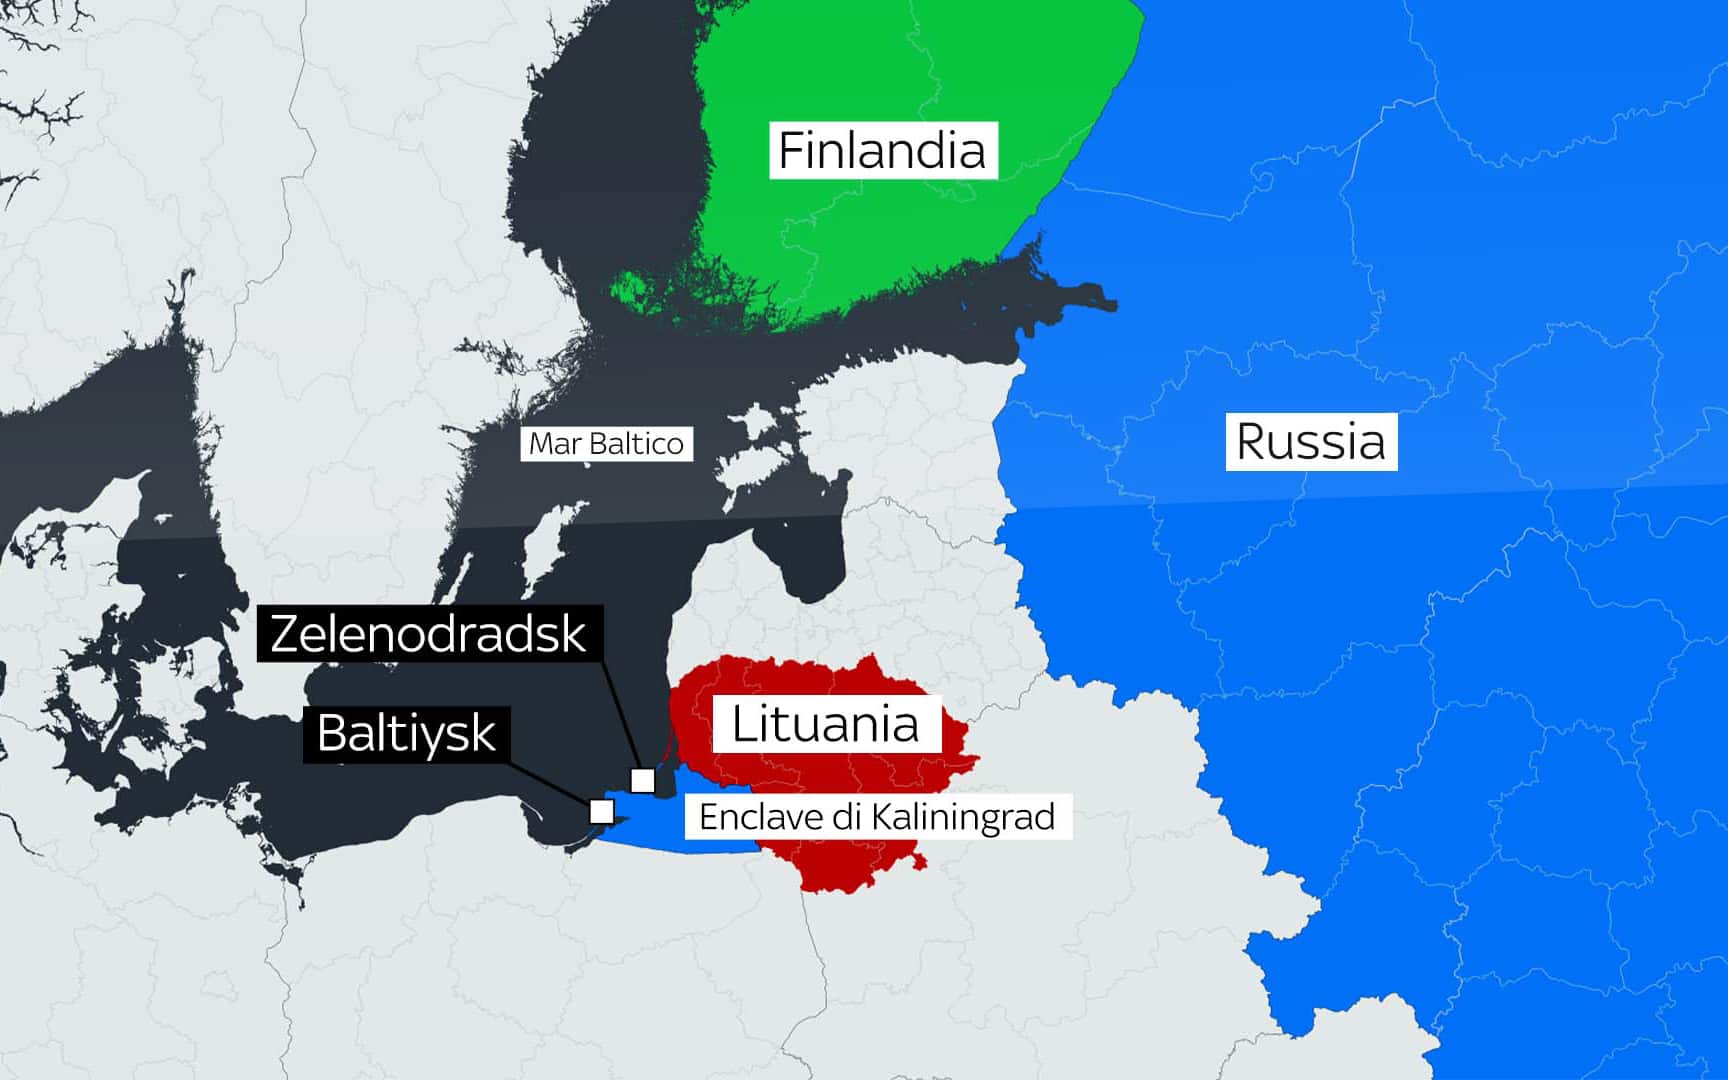 La Gran Bretagna sospinge la Finlandia a bloccare la Russia nel Baltico